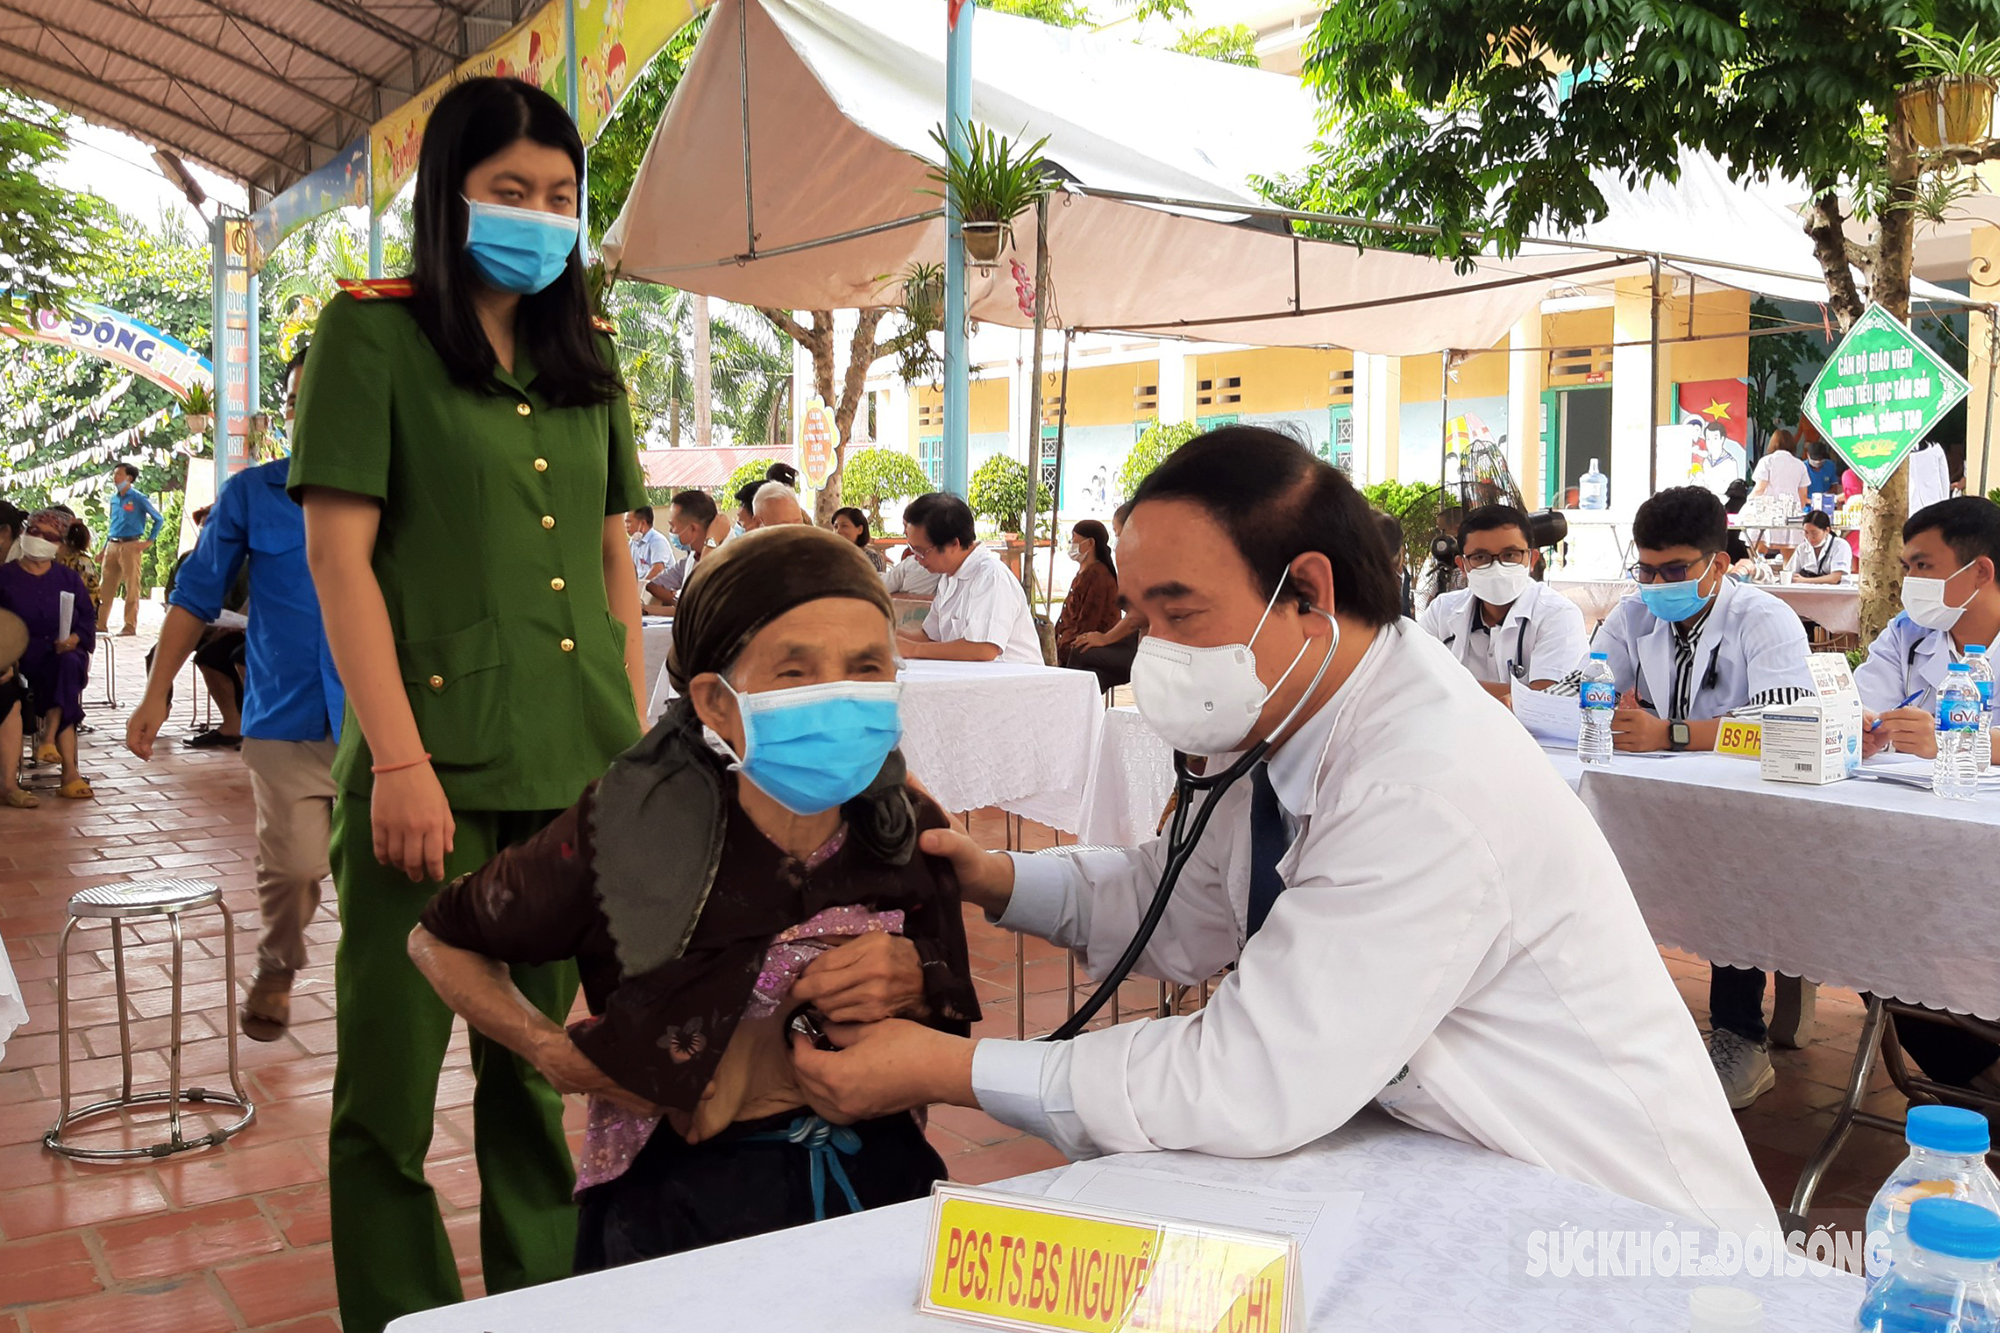 Bác sĩ Hà Nội & Hội Thày Thuốc Trẻ Tỉnh Bắc Giang khám bệnh & phát thuốc miễn phí cho 500 người có công với cách mạng - Ảnh 2.